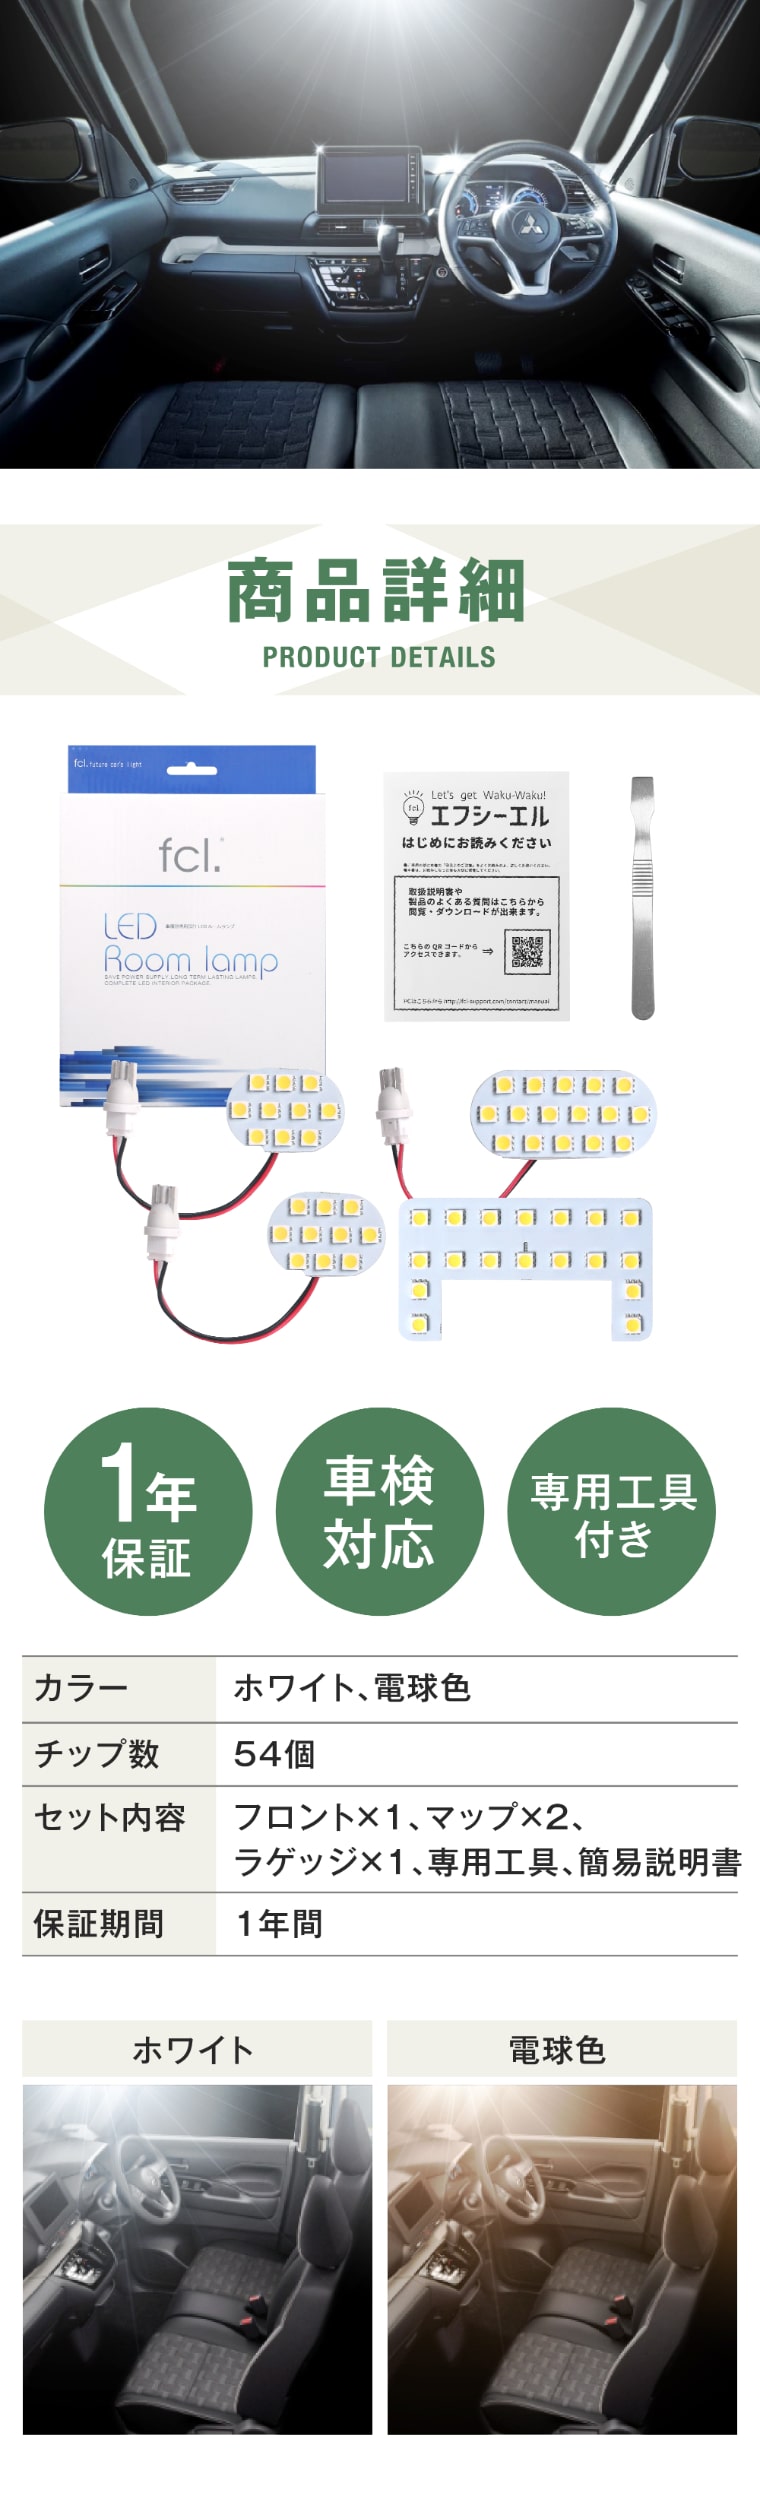 デリカミニ LED ルームランプ【公式通販】fcl. 車のLED専門店